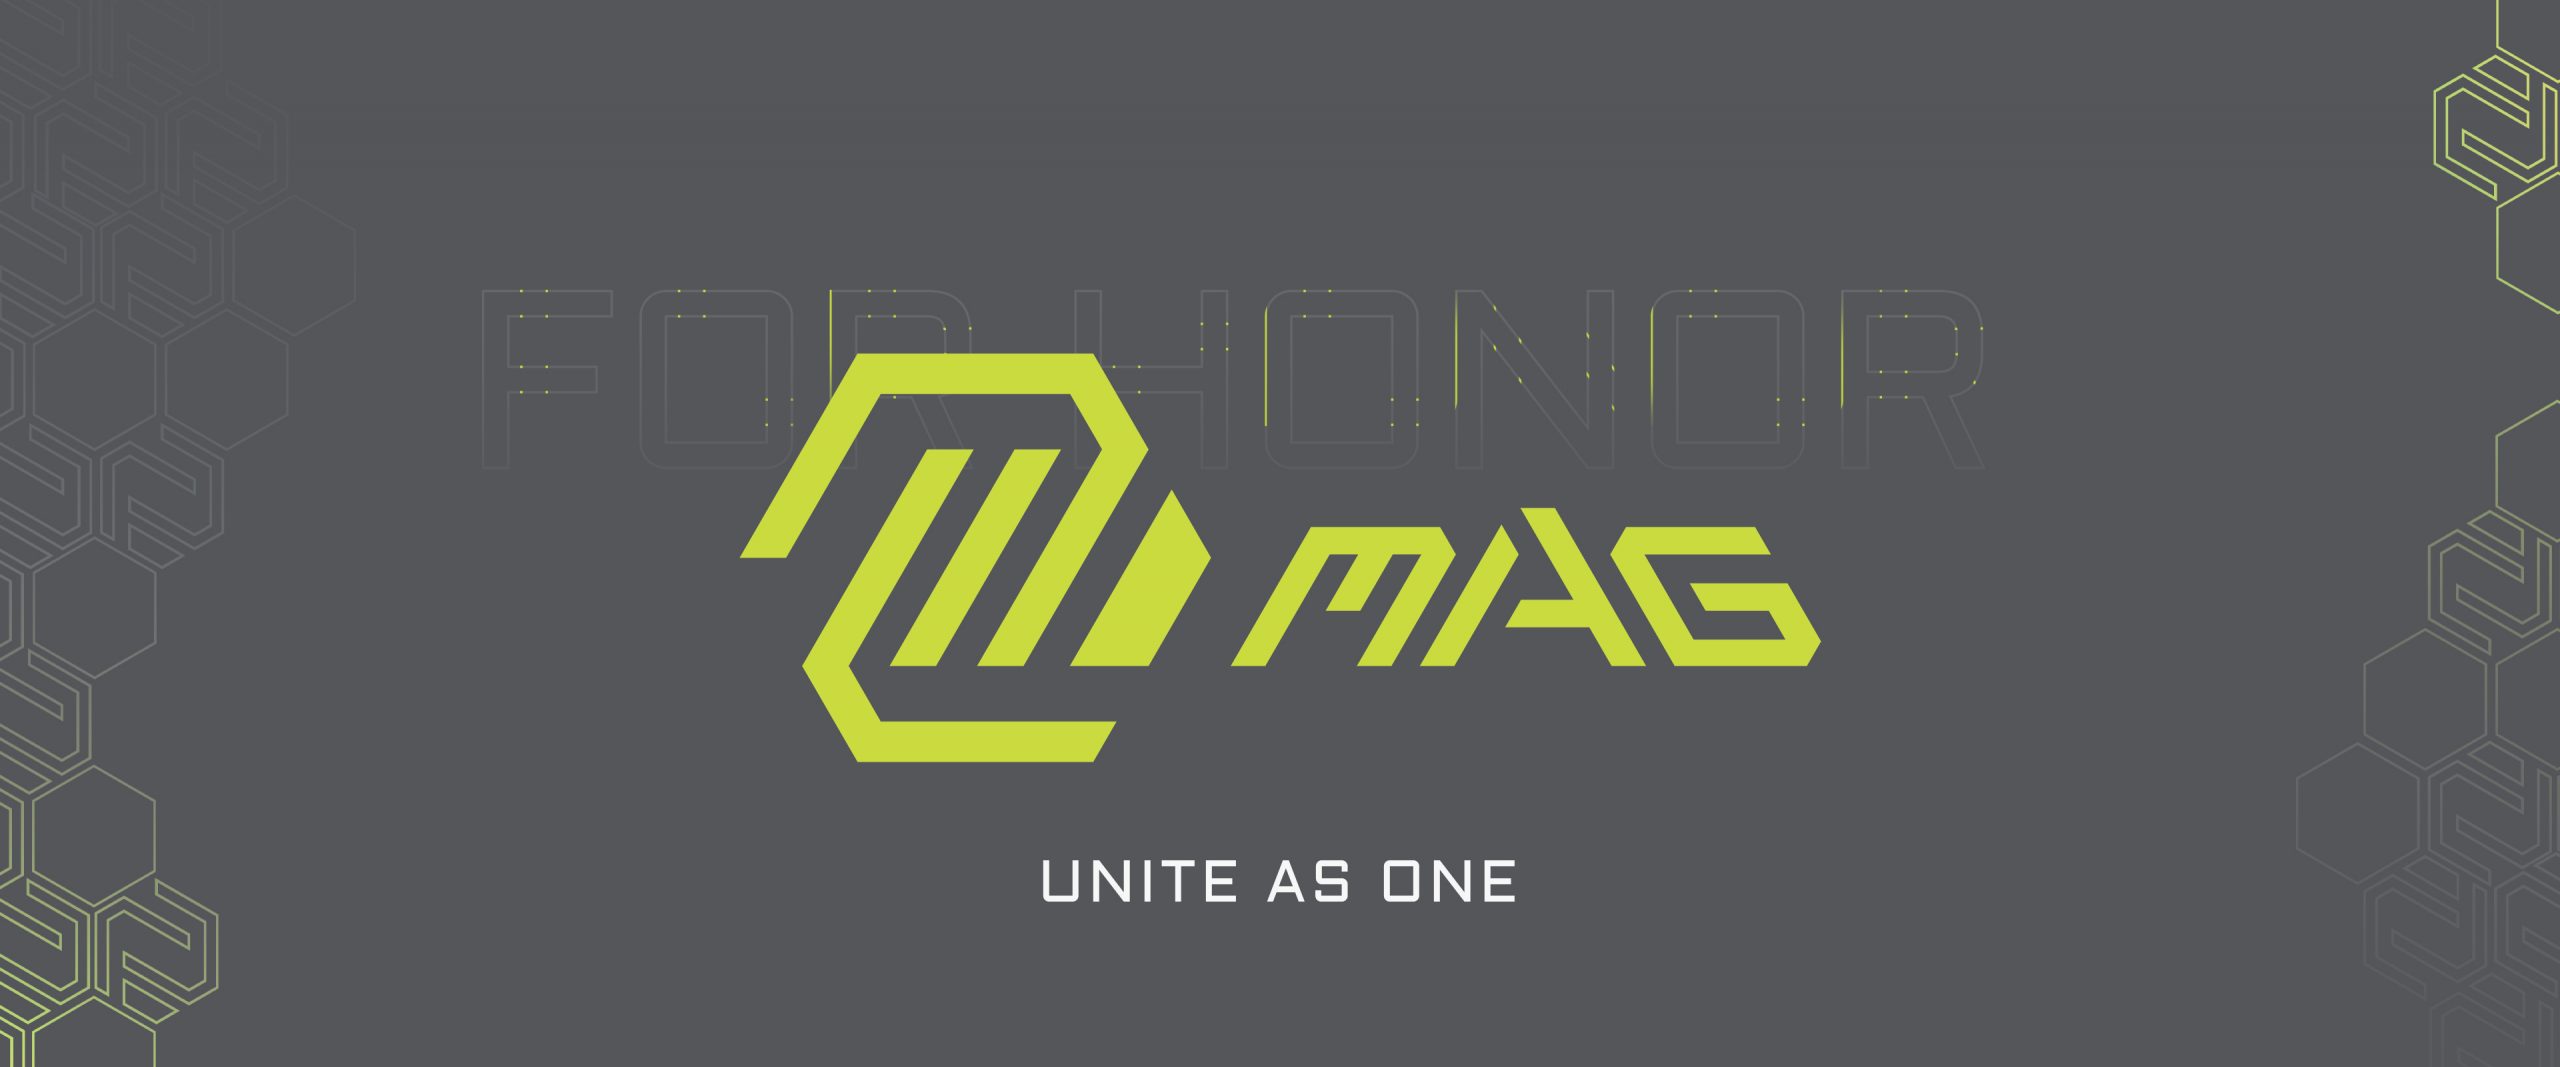 MSI Gaming công bố biểu tượng mới Cho các dòng sản phẩm MEG, MPG và MAG